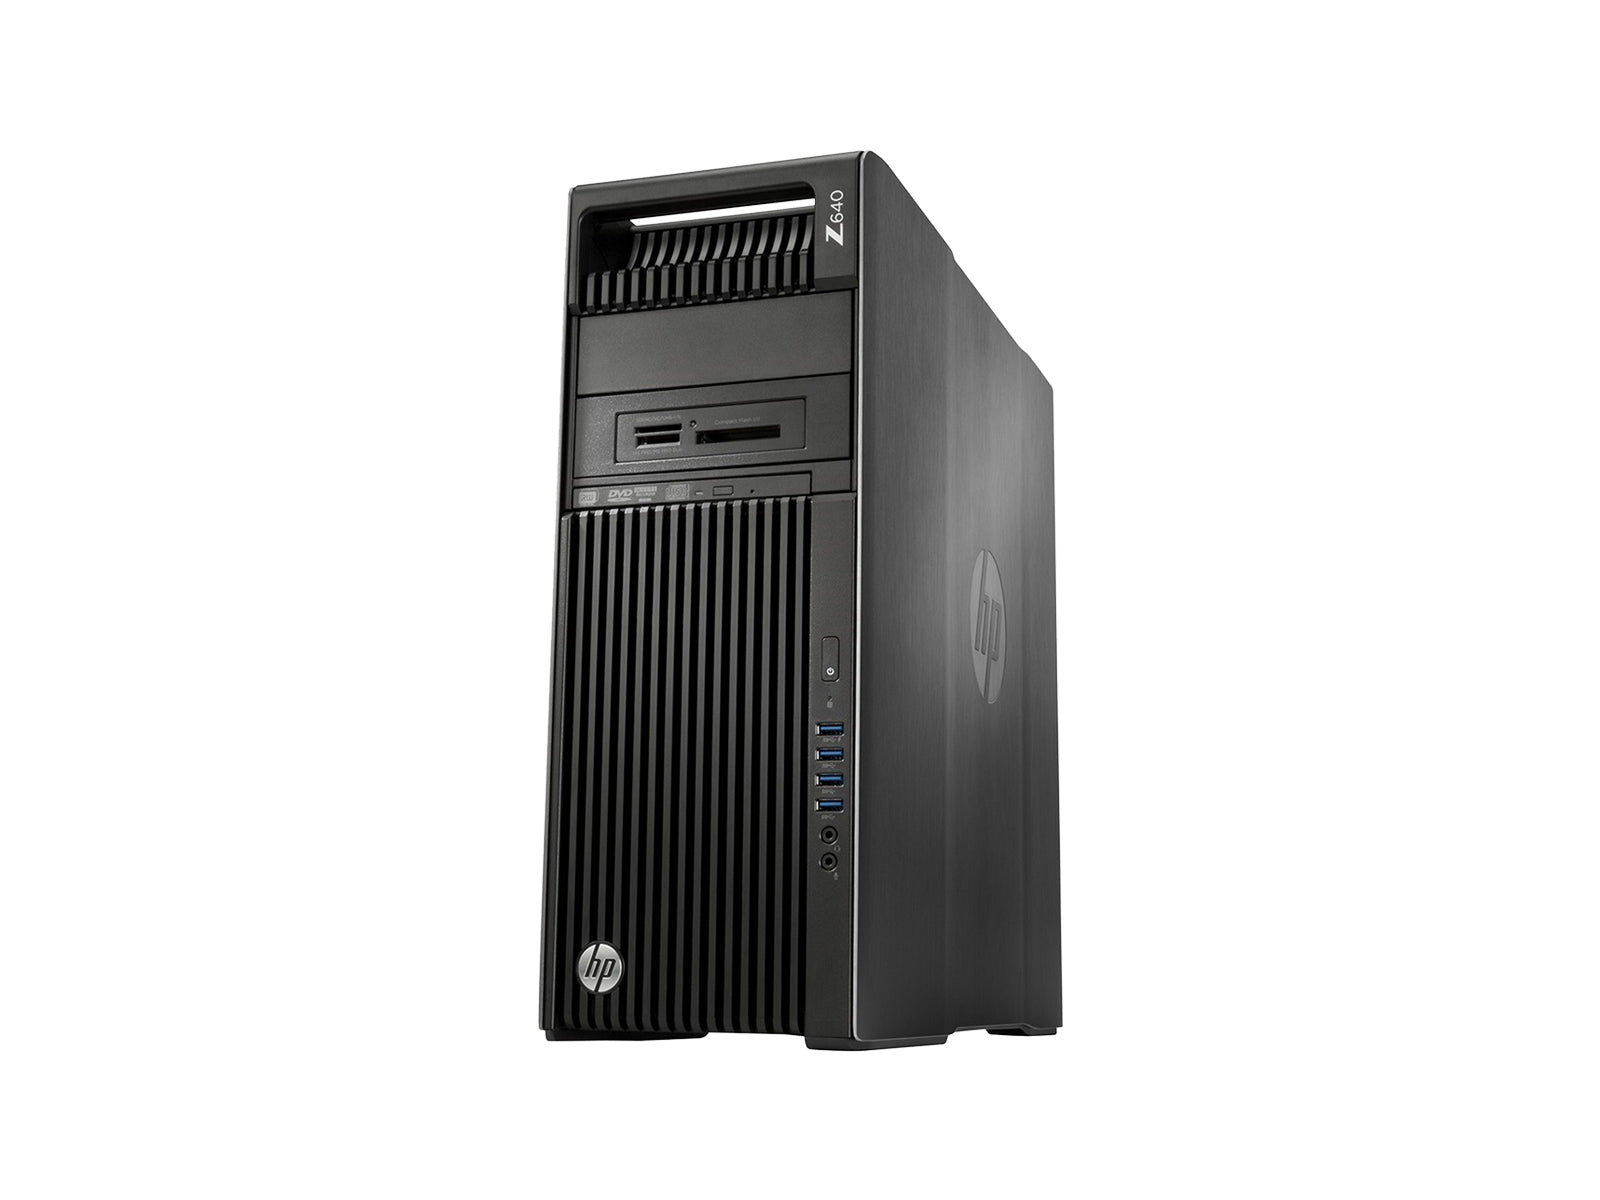 Estación de trabajo HP Z640 | Intel Xeon E5-2640 | 64 GB DDR4 | SSD de 500 GB | AMD W5100 | Win10 Pro